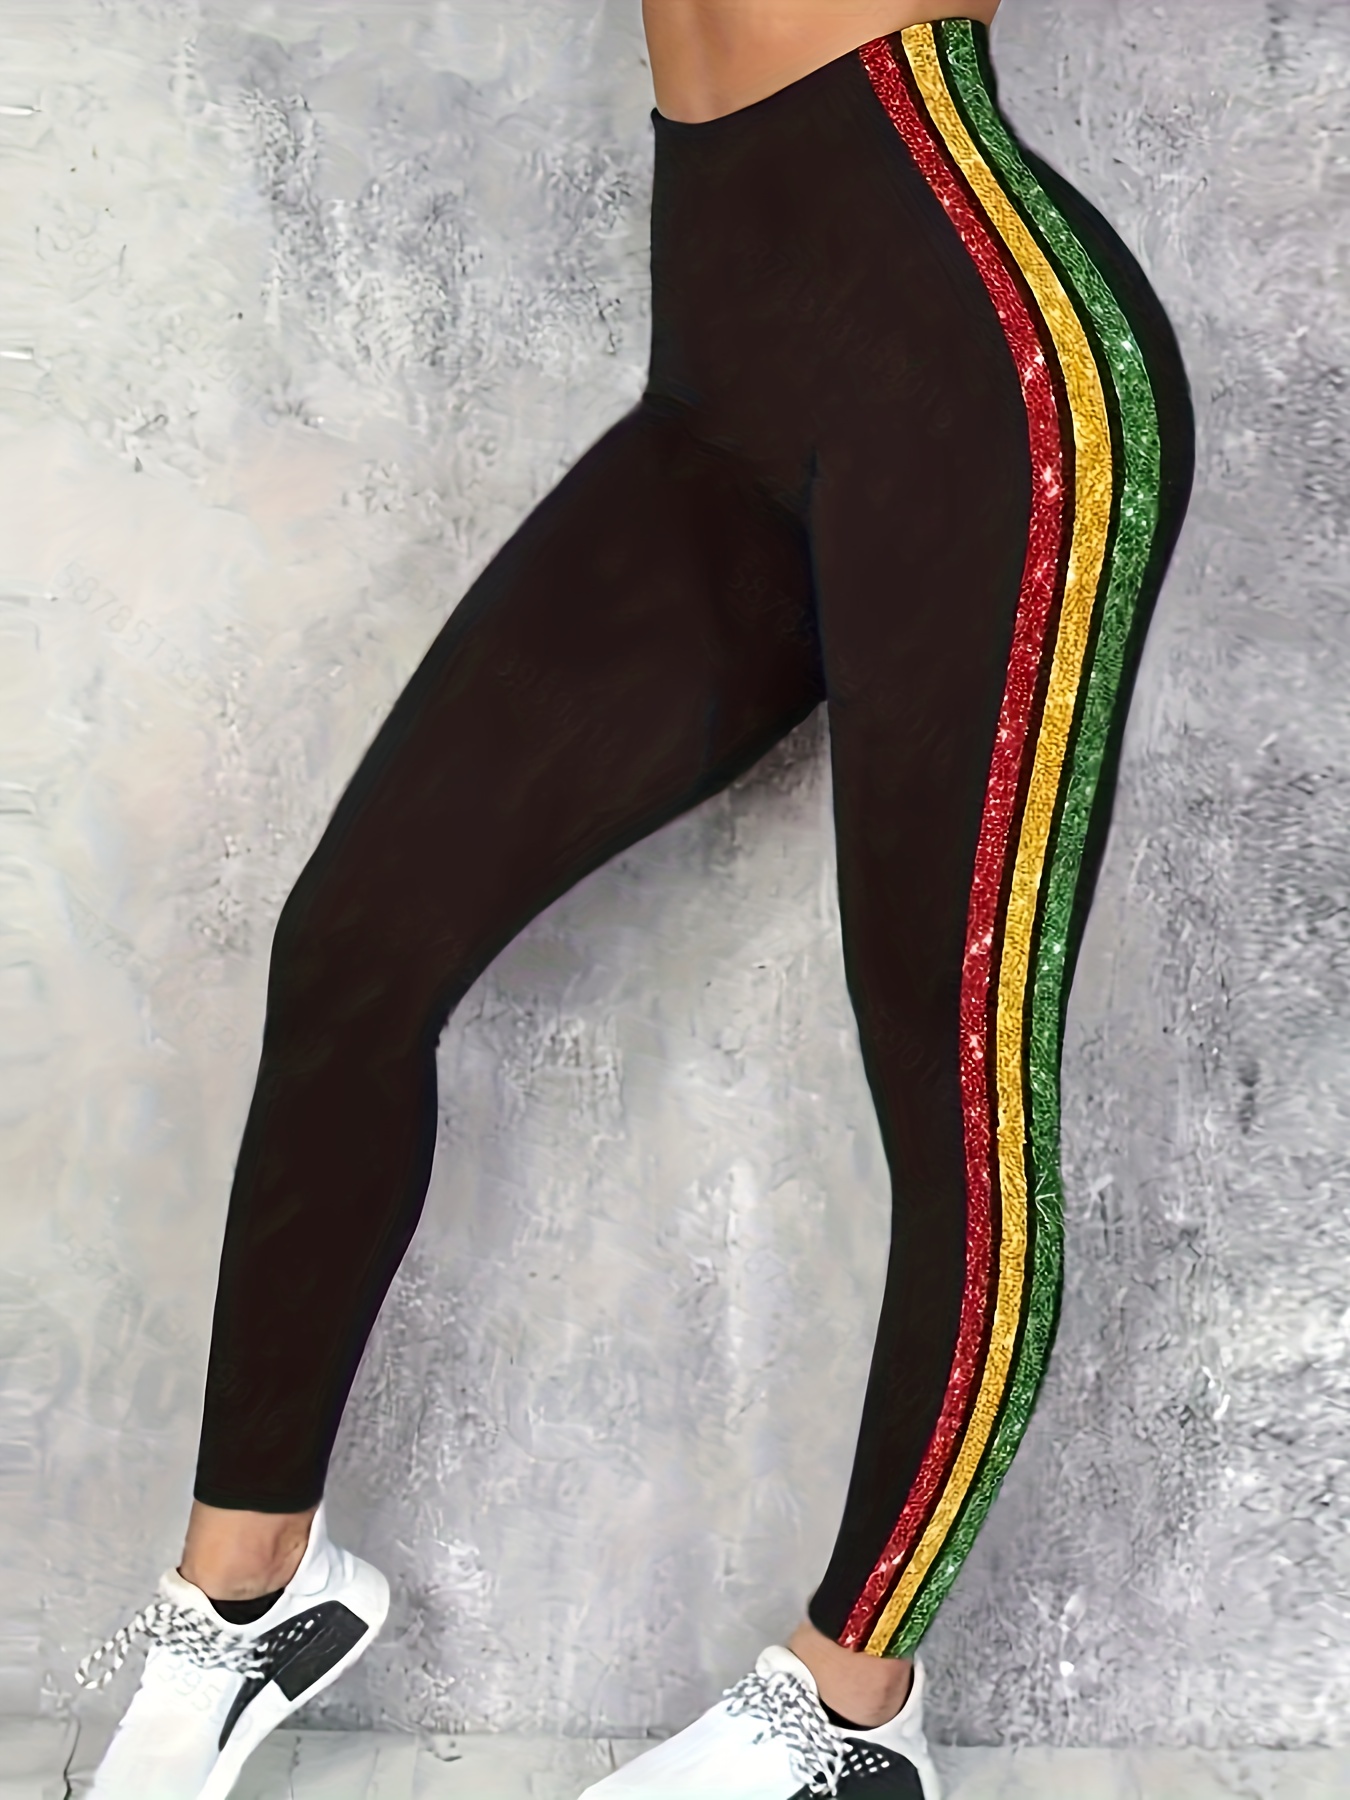 Women’s size 2X Sixteen plus brand stretch BLACK Yoga Pants Leggings